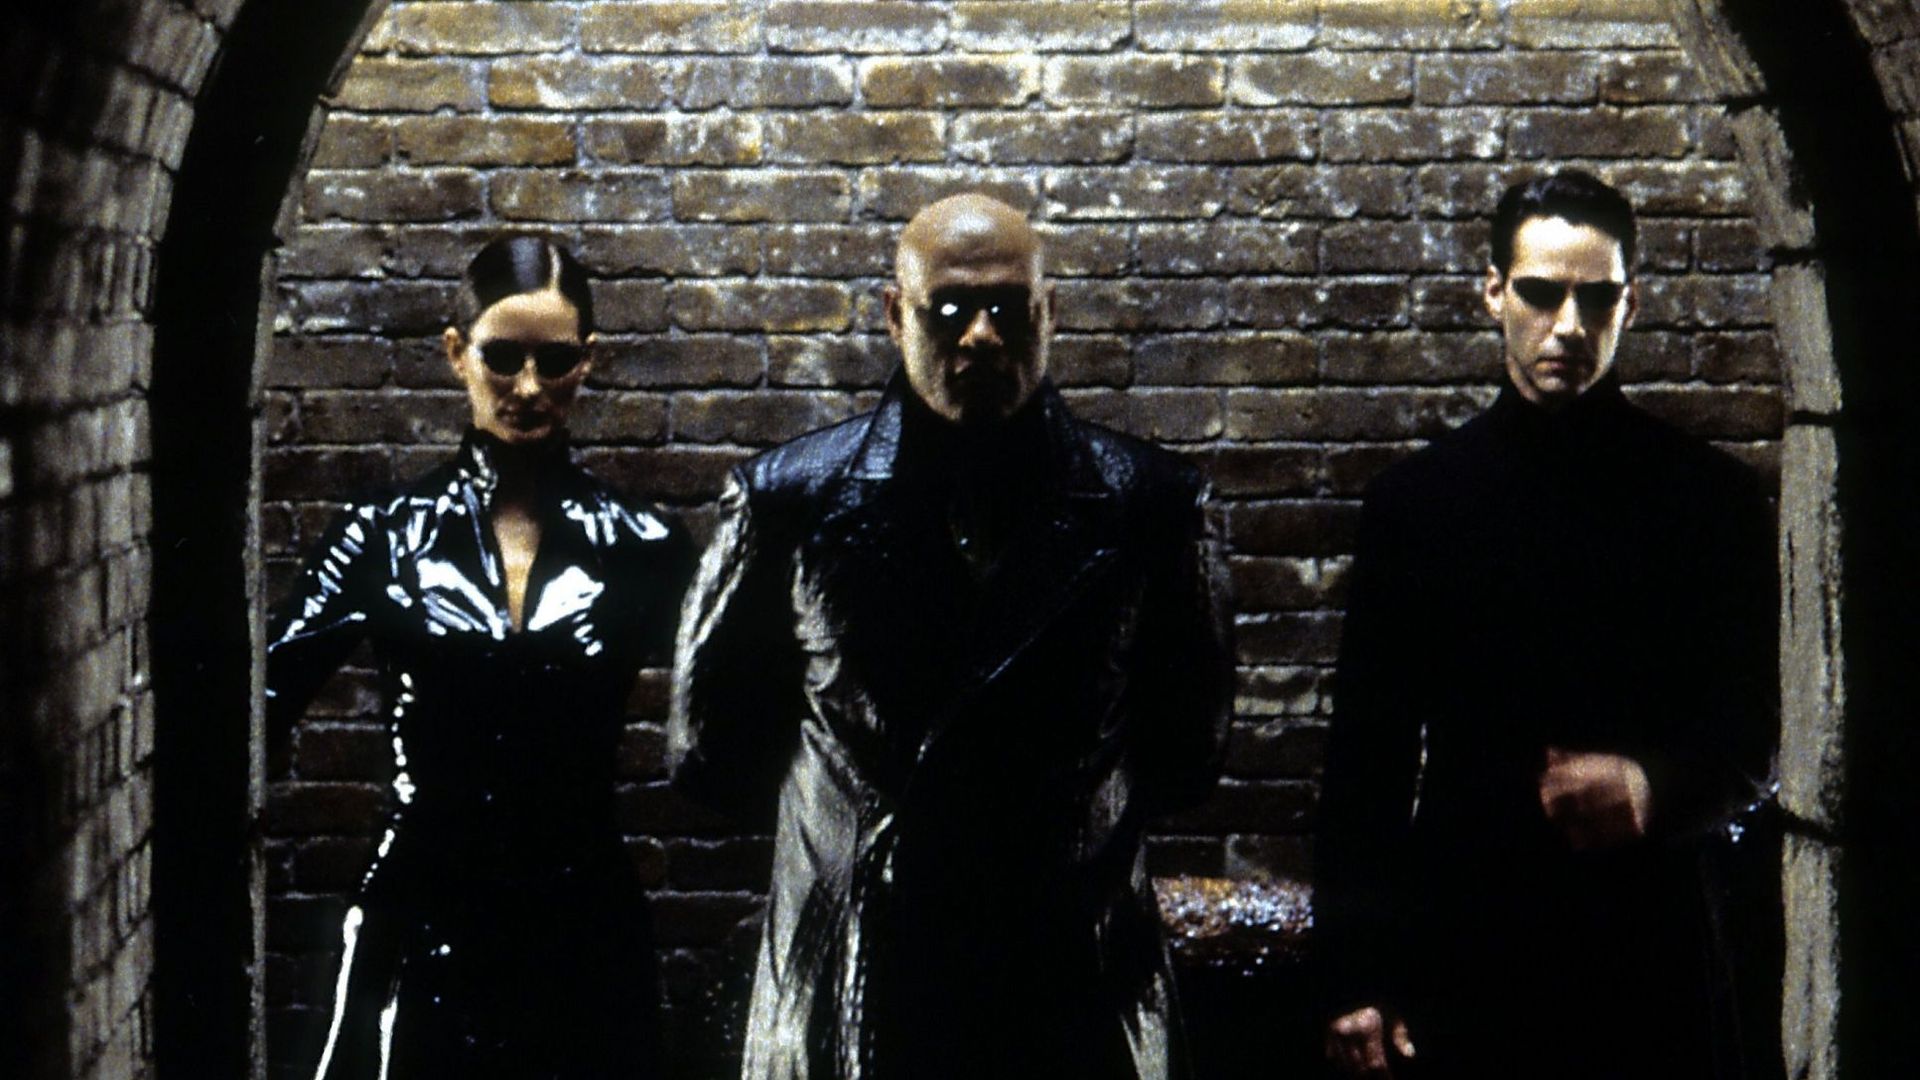 Les toutes premières images de "Matrix 4" enfin dévoilées